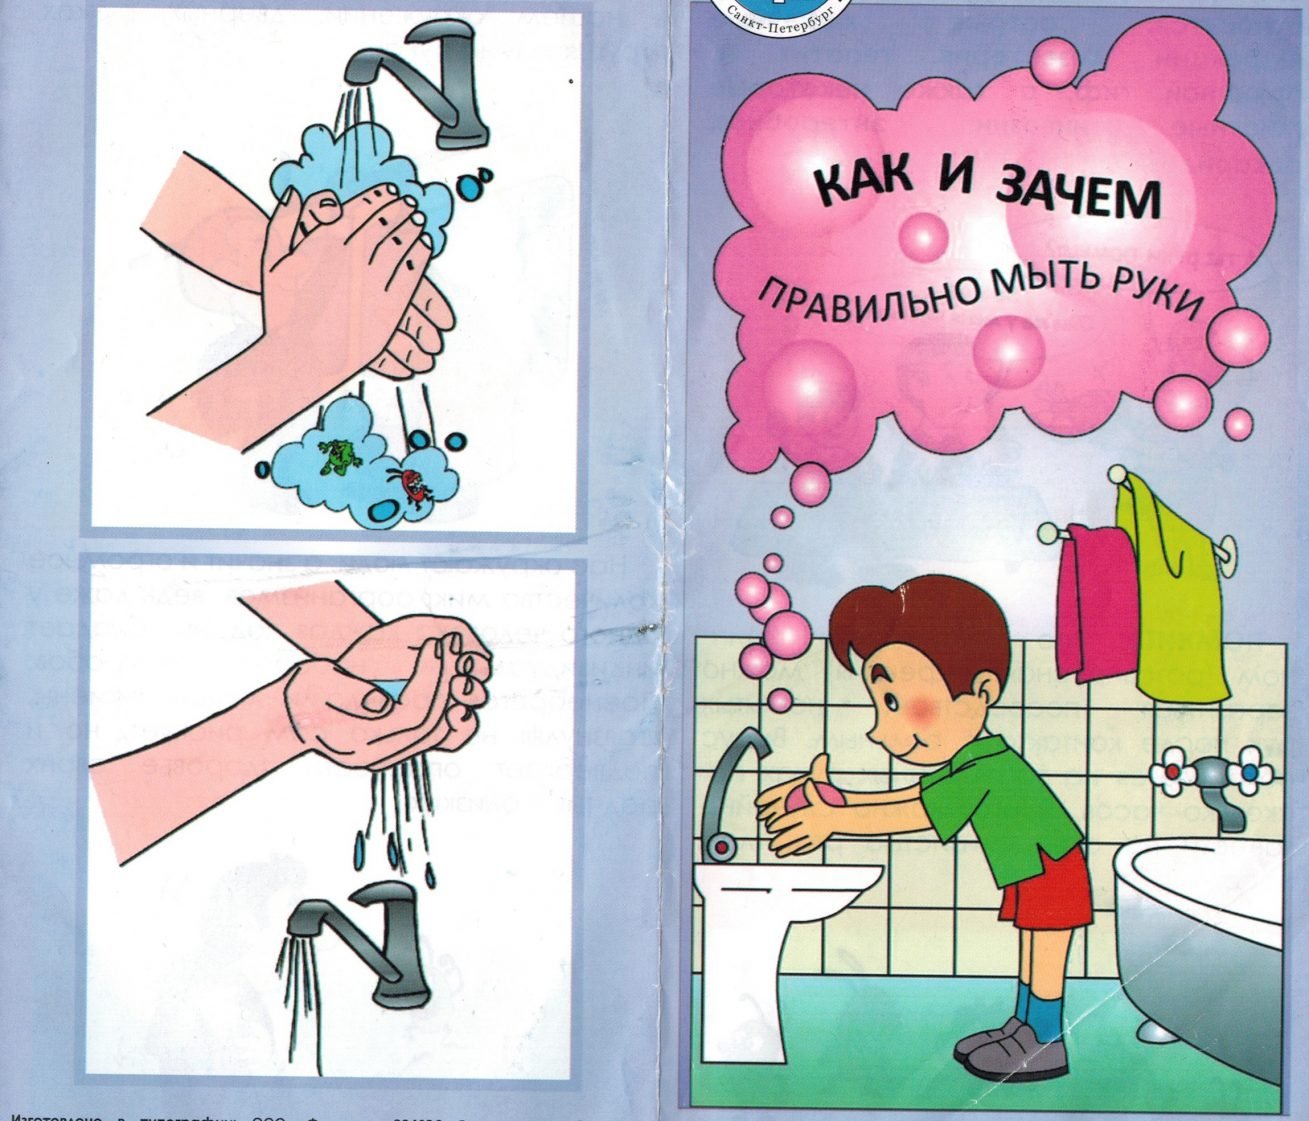 Мытье рук картинки для детей